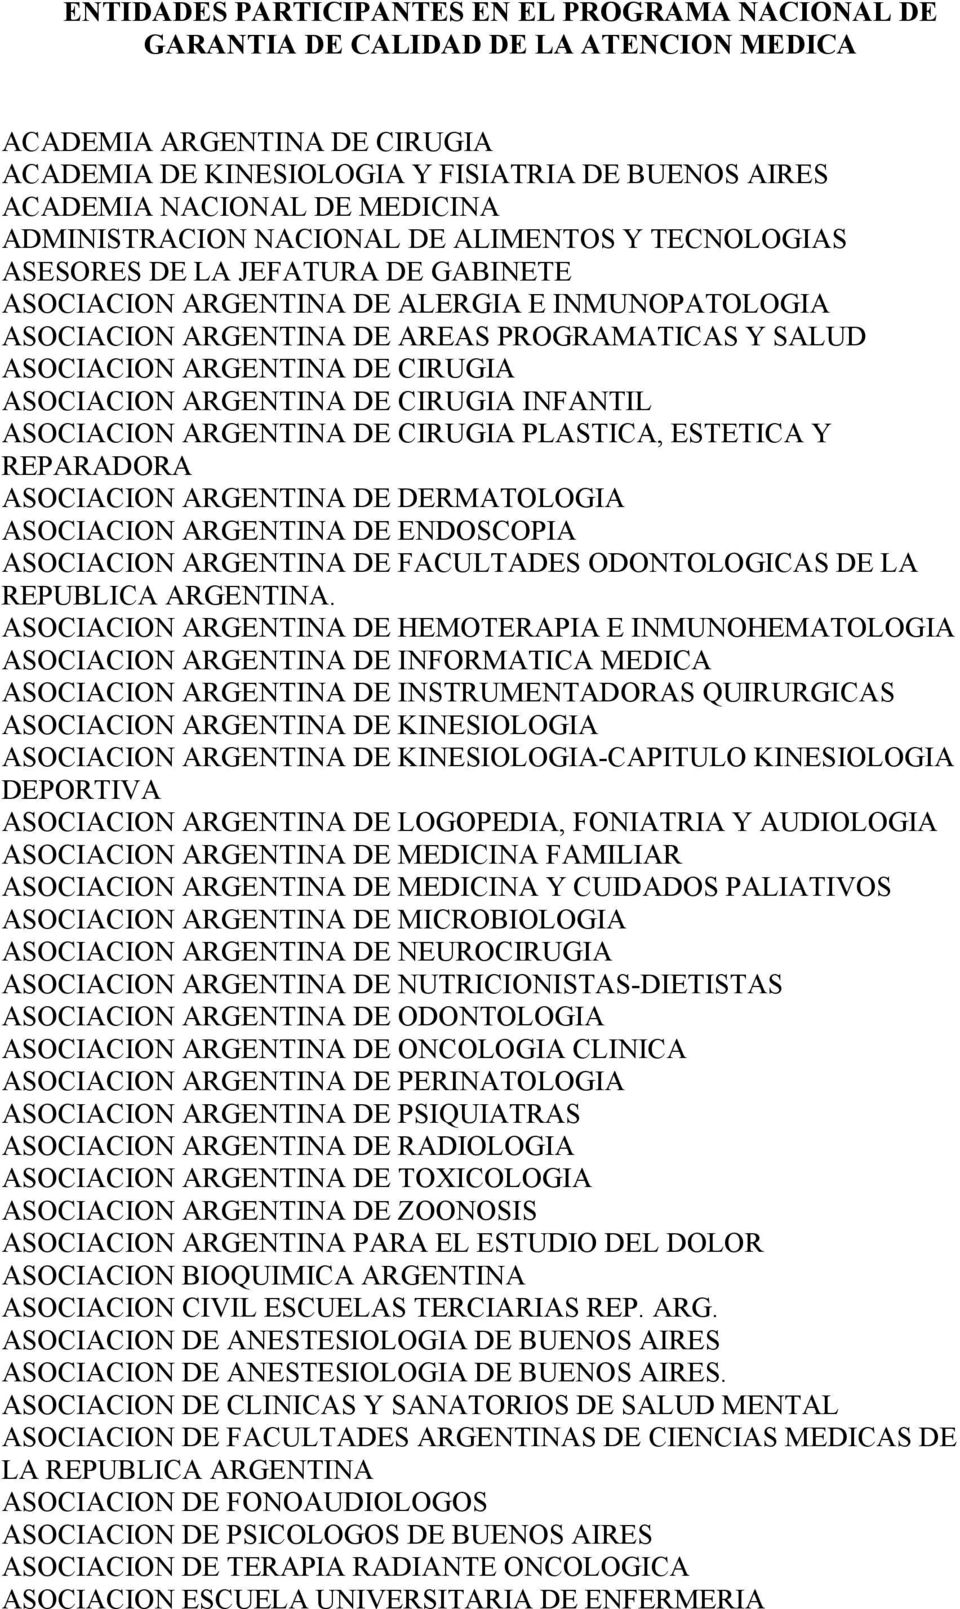 ASOCIACION ARGENTINA DE CIRUGIA ASOCIACION ARGENTINA DE CIRUGIA INFANTIL ASOCIACION ARGENTINA DE CIRUGIA PLASTICA, ESTETICA Y REPARADORA ASOCIACION ARGENTINA DE DERMATOLOGIA ASOCIACION ARGENTINA DE